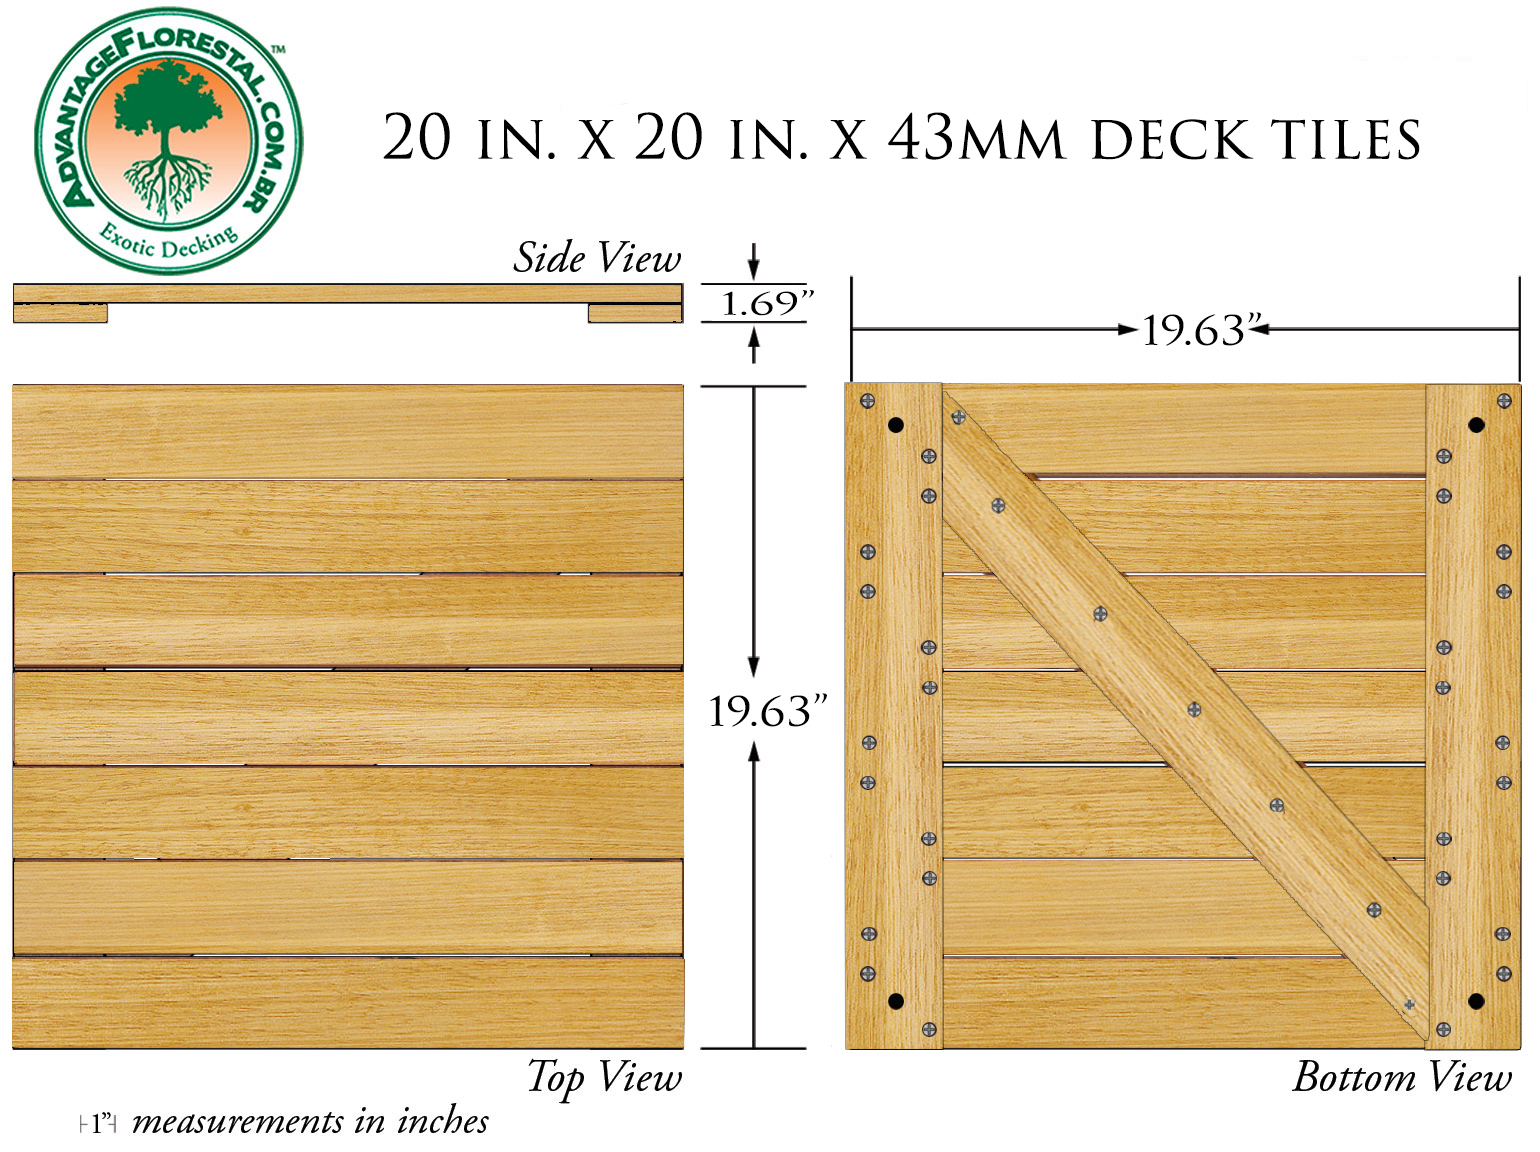 Tauari Deck Tile 20 in. x 20 in. x 43mm